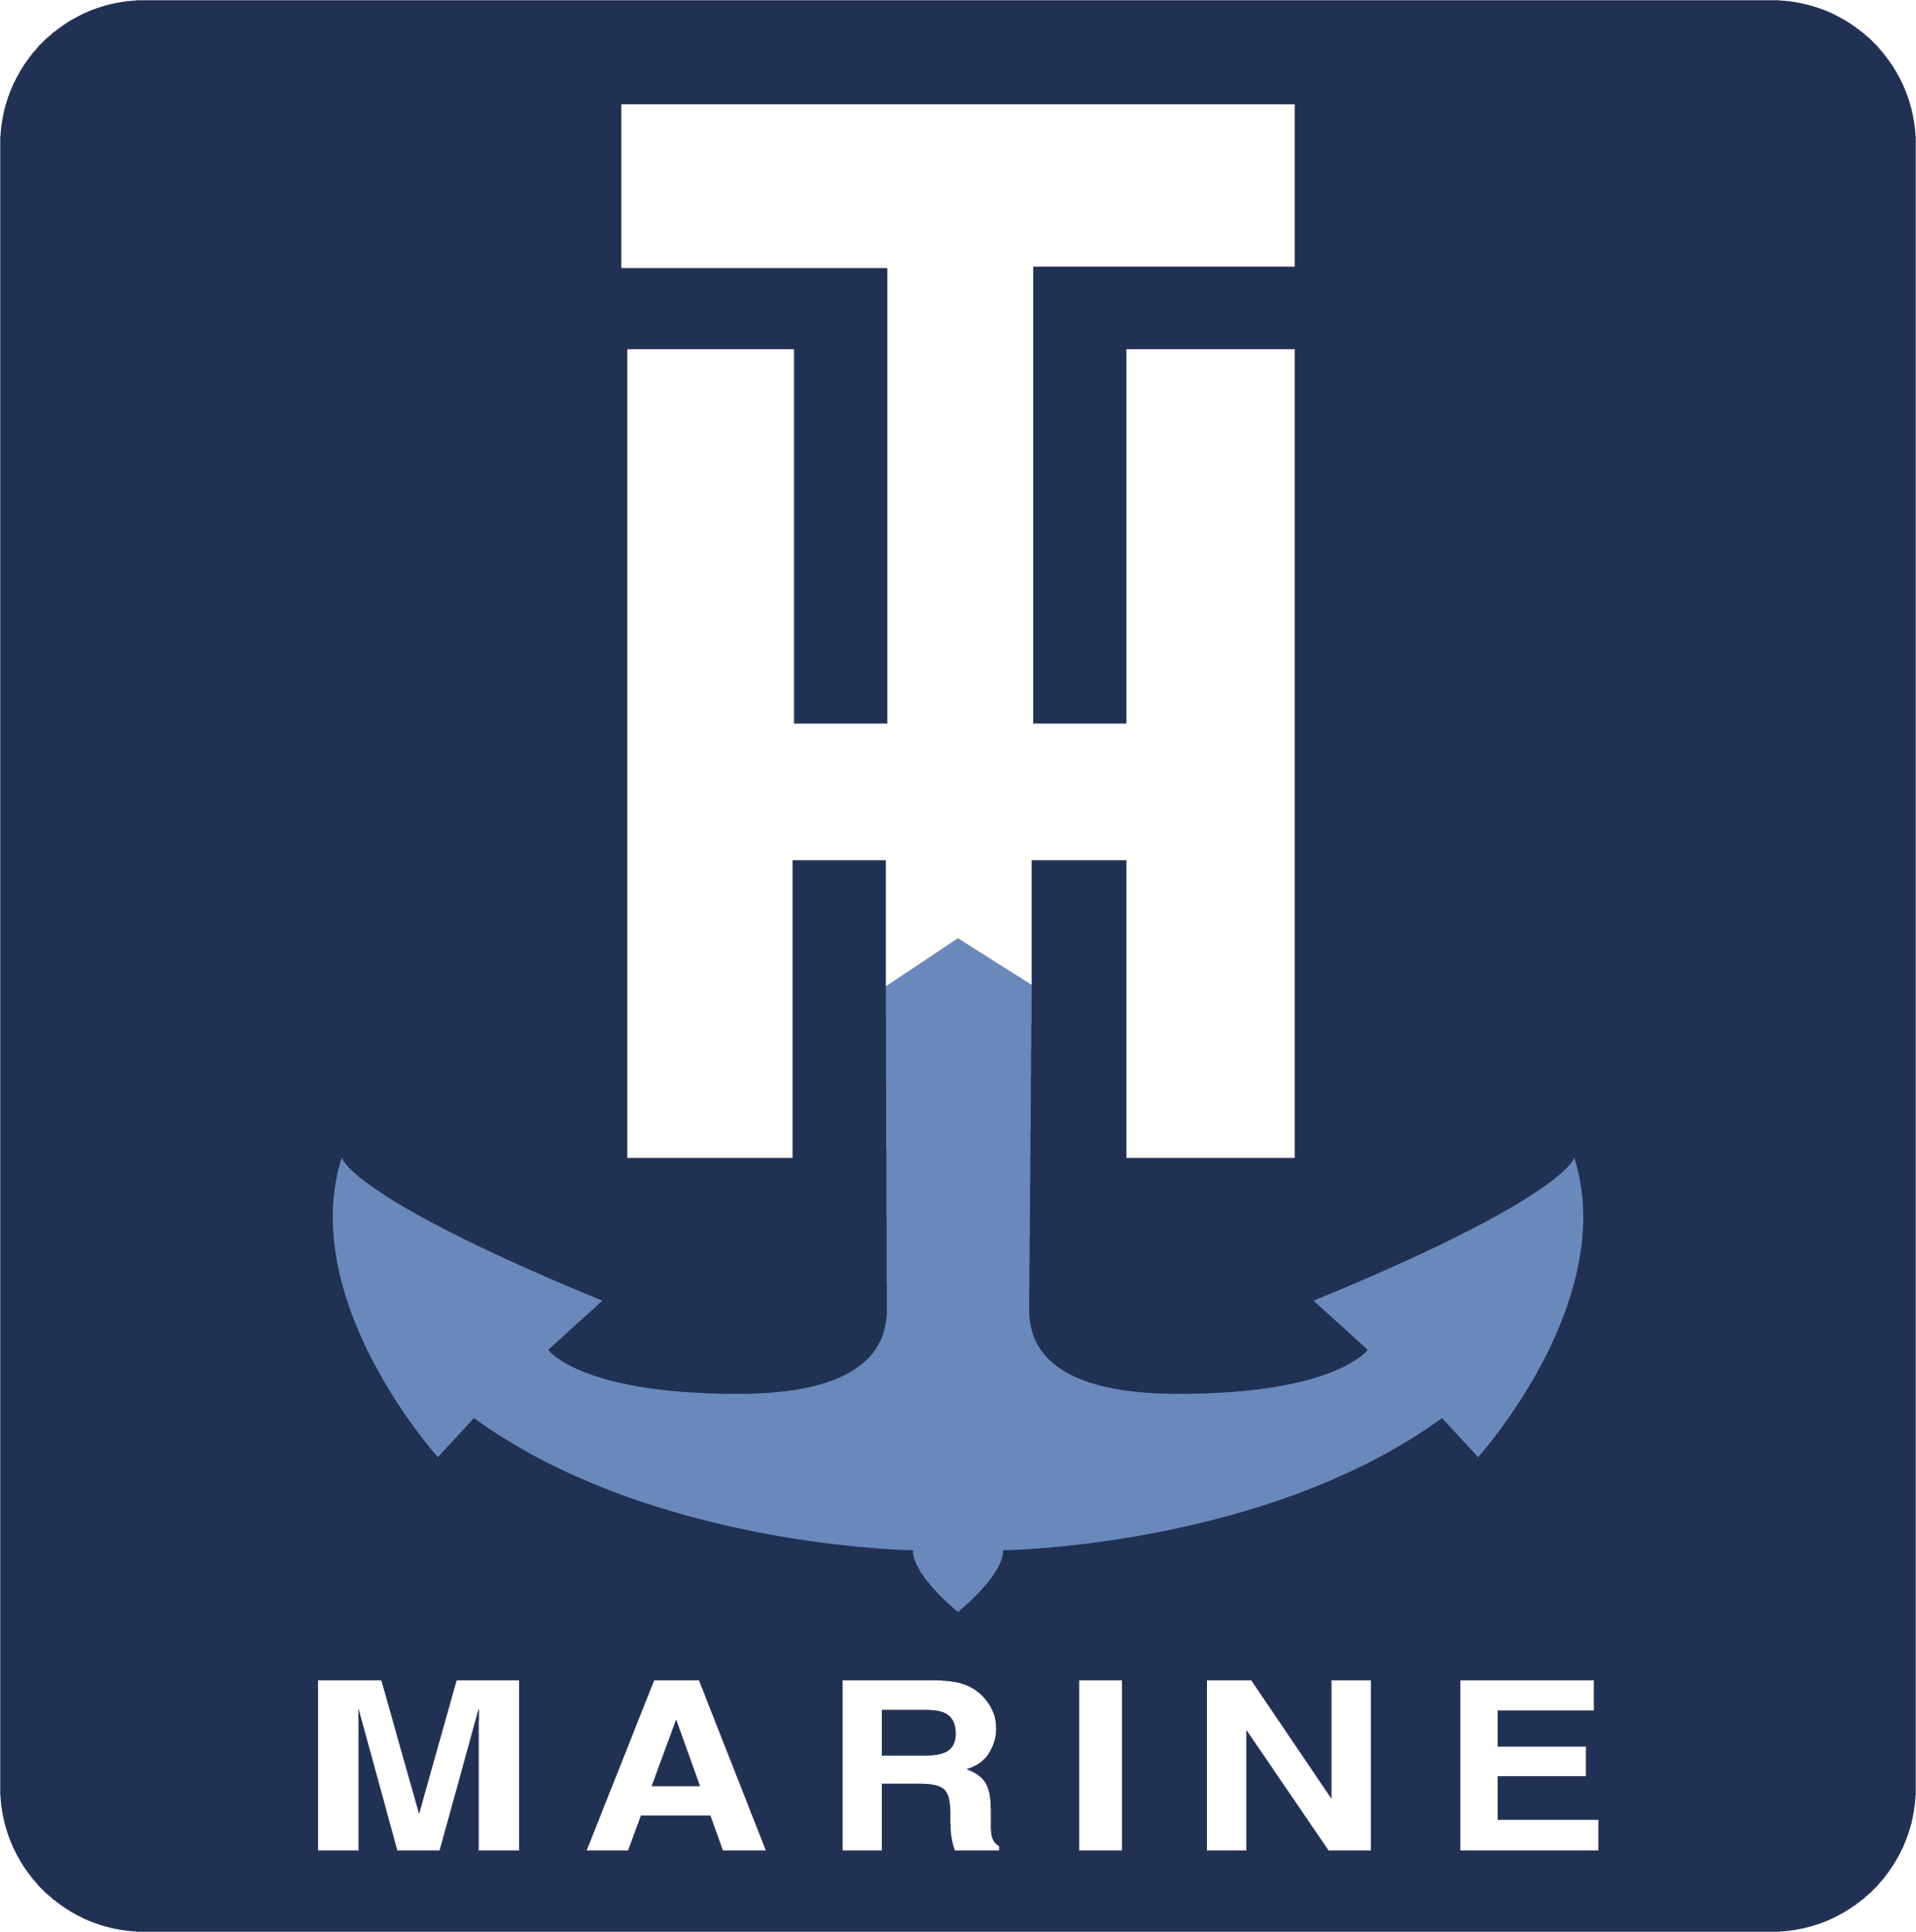 T-H Marine_logo